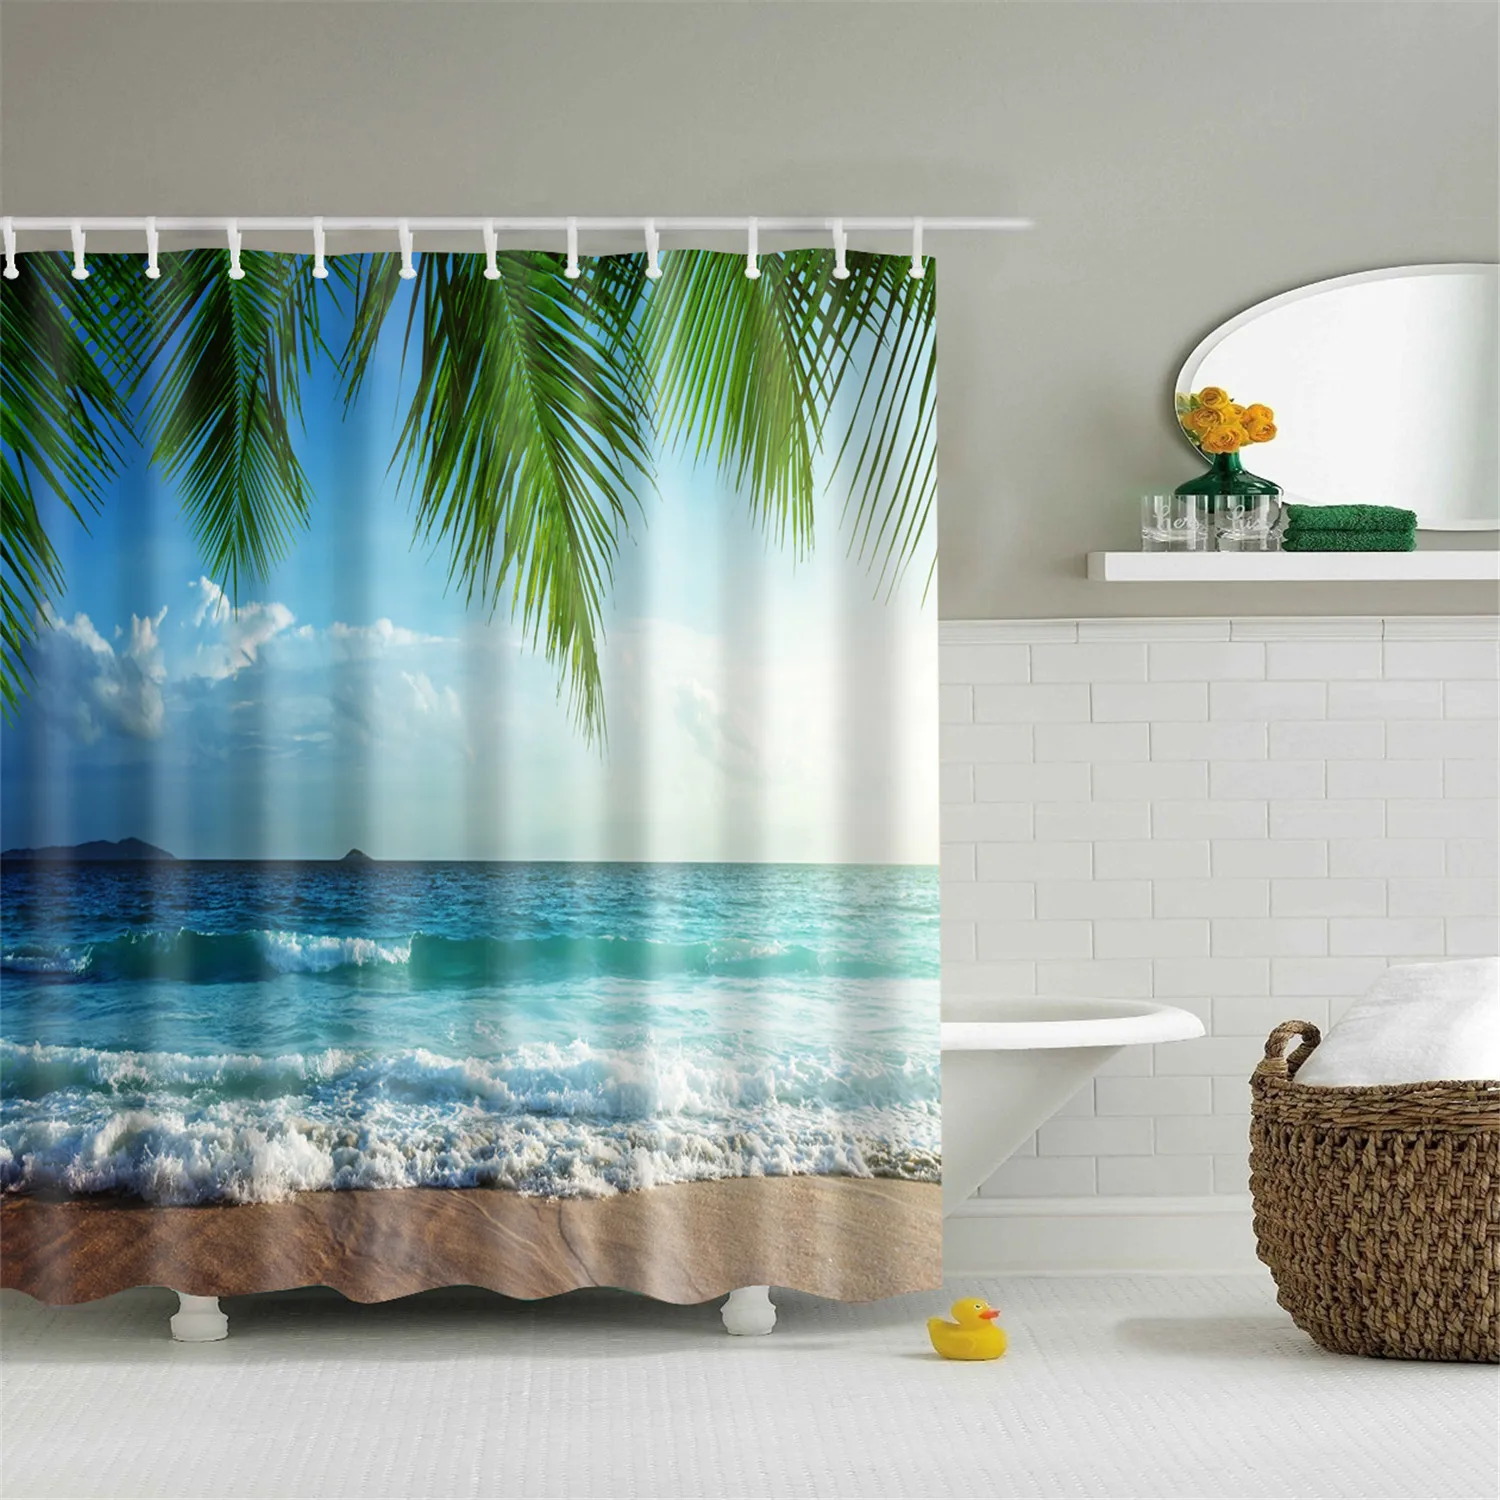 Пляжная занавеска для душа, водостойкая полиэфирная 3D затемненная занавеска для ванной комнаты, большая занавеска 180x200 см для ванной комнаты